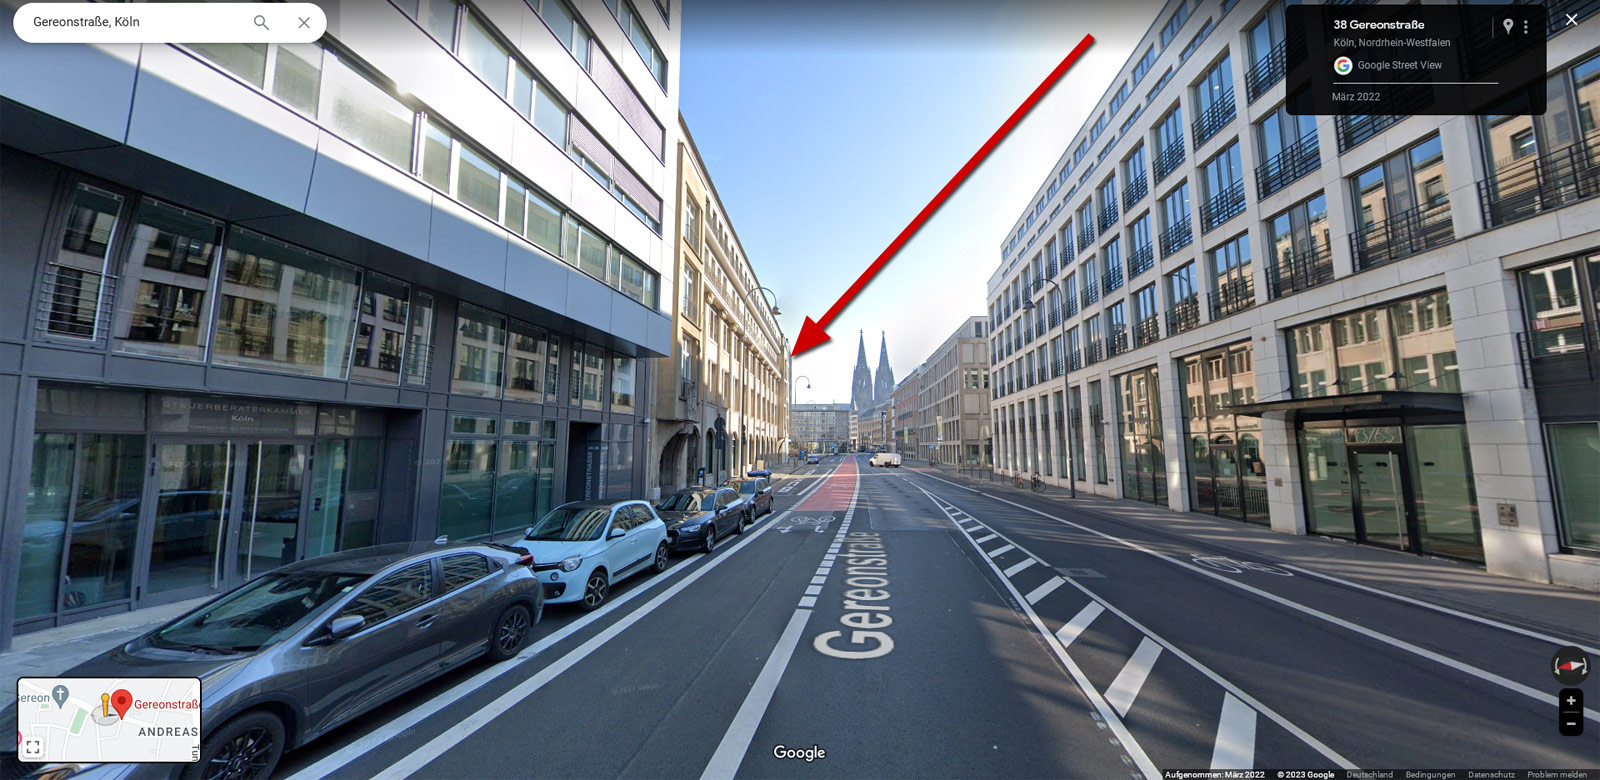 Gereonshaus in Köln mit Google Street View